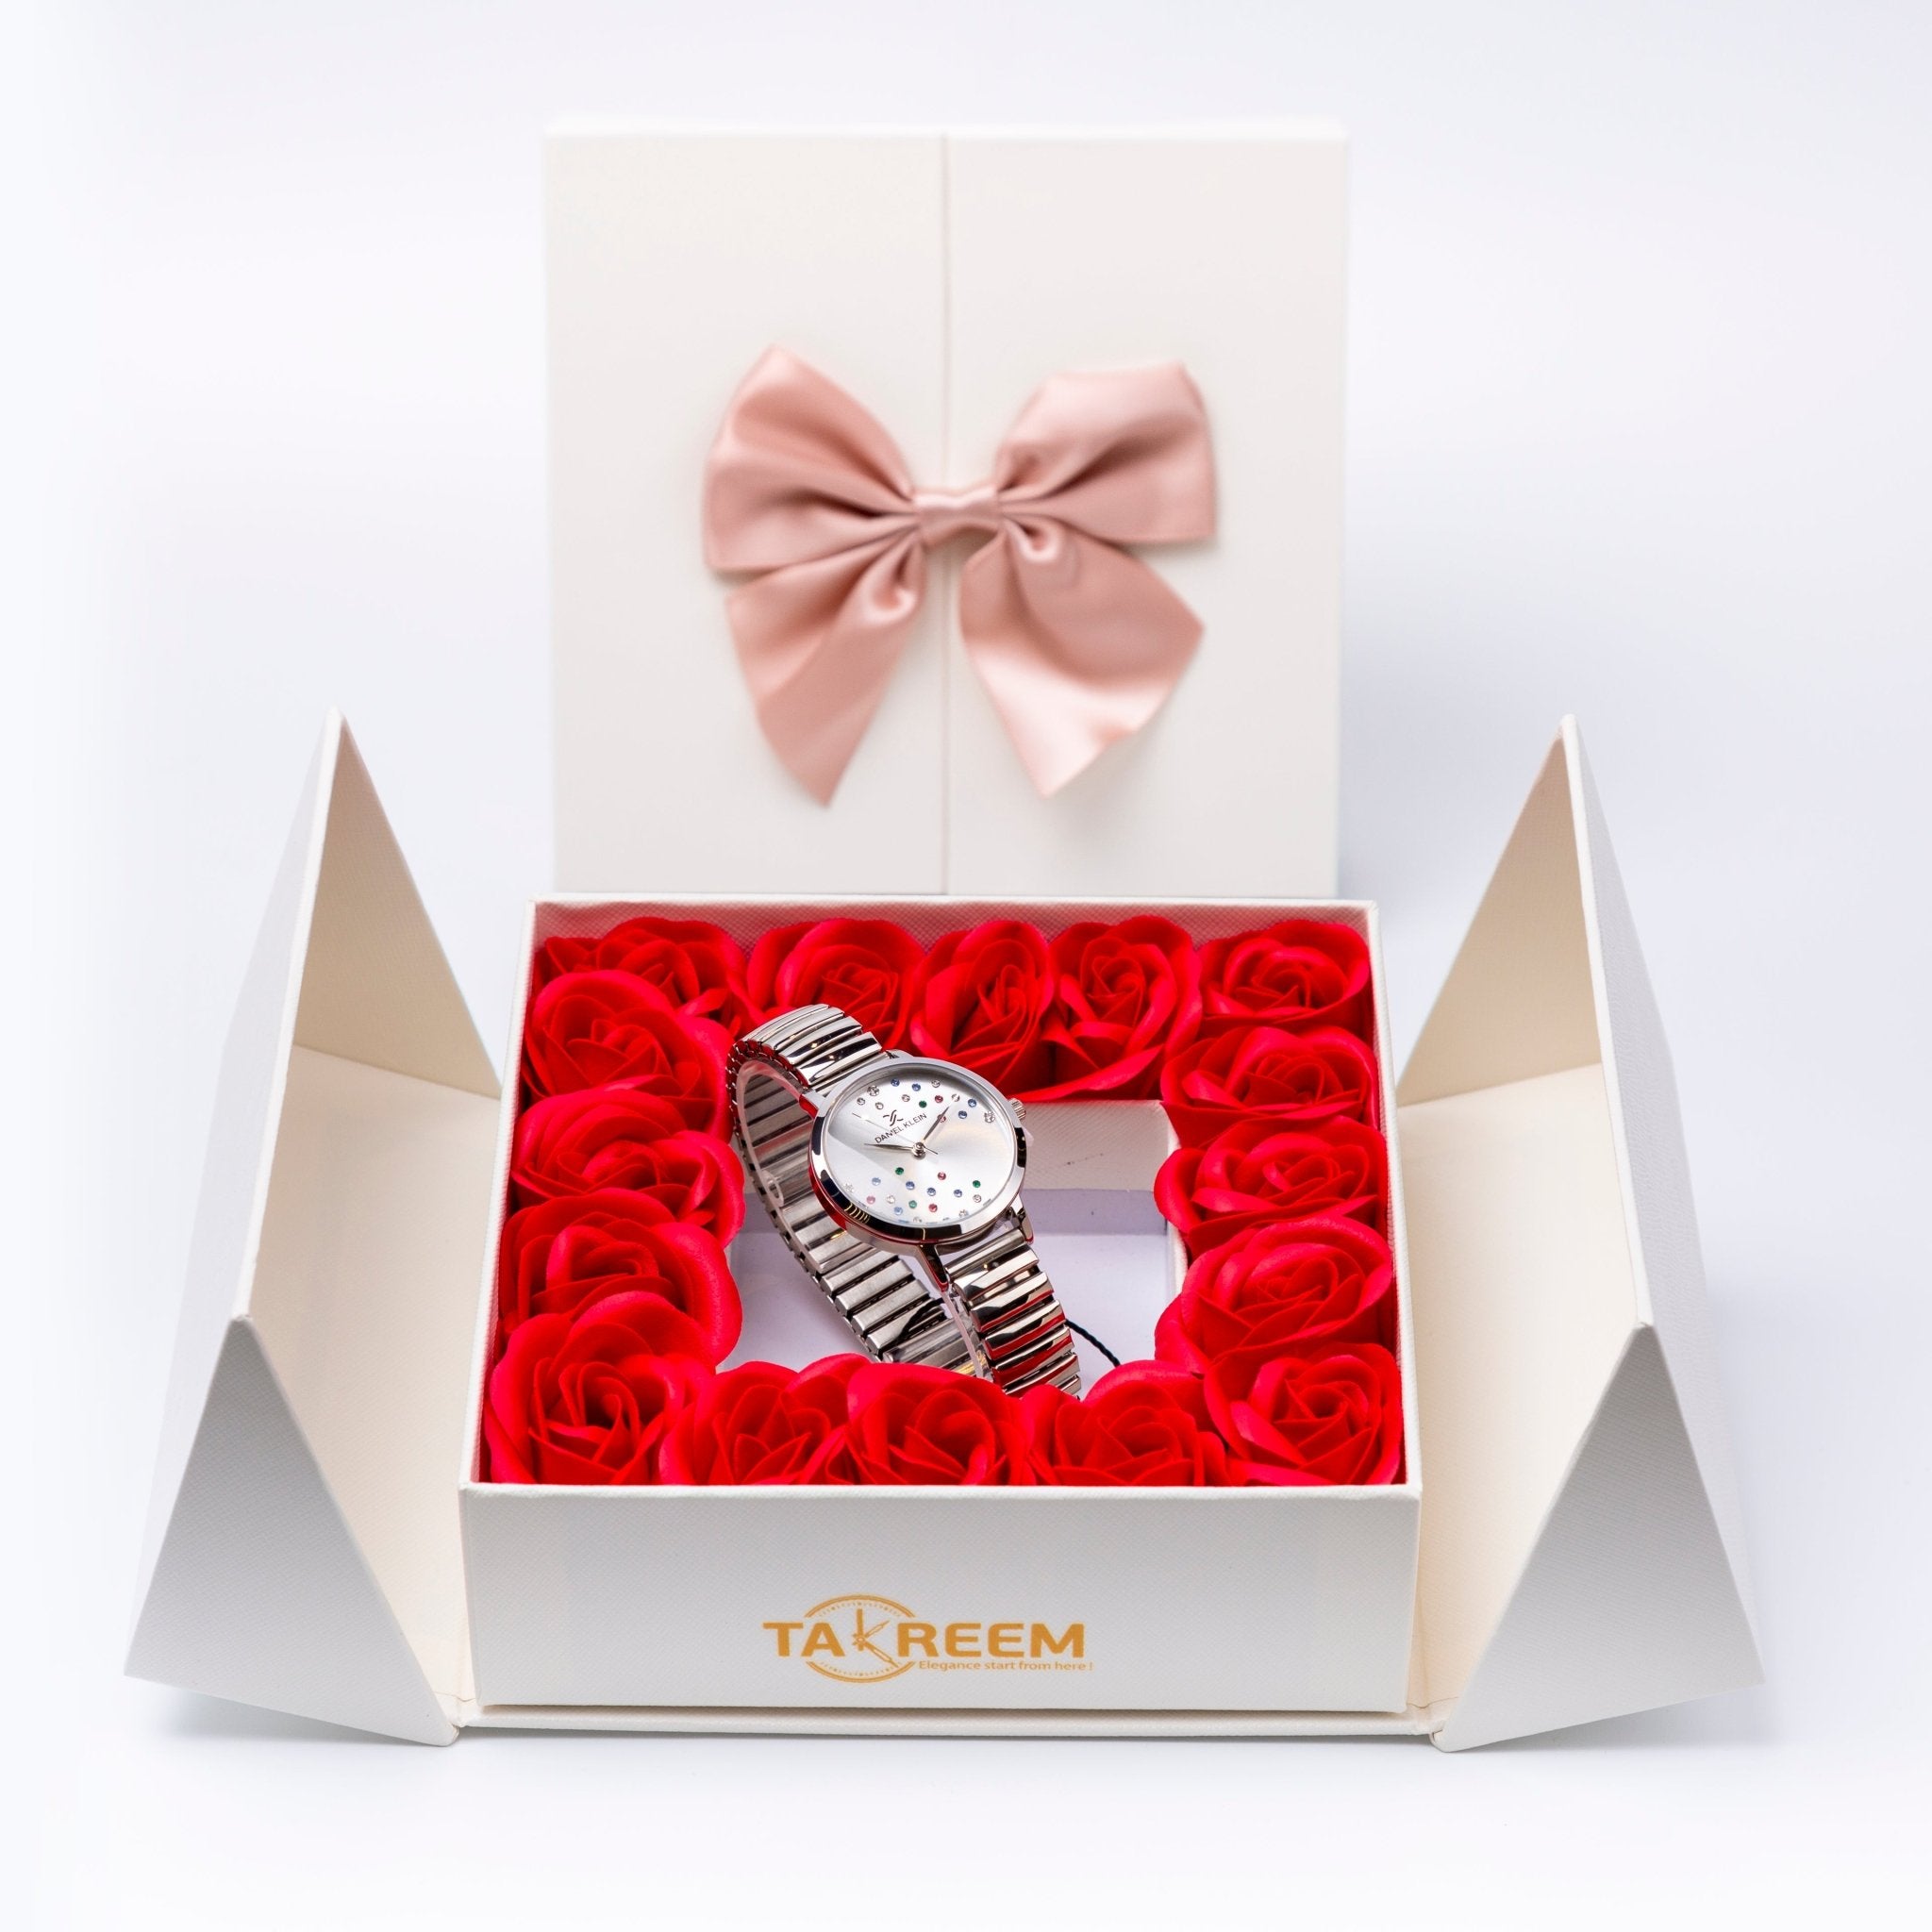 Flower Box - Gift For Women 7 - #shoFlower Box - Gift For Women 7p_name#Flower Box - Gift For Women 7Gift Boxes & TinsTakreemTakreem.joWomenWatchFlower Box - Gift For Women 7 - Takreem.jo